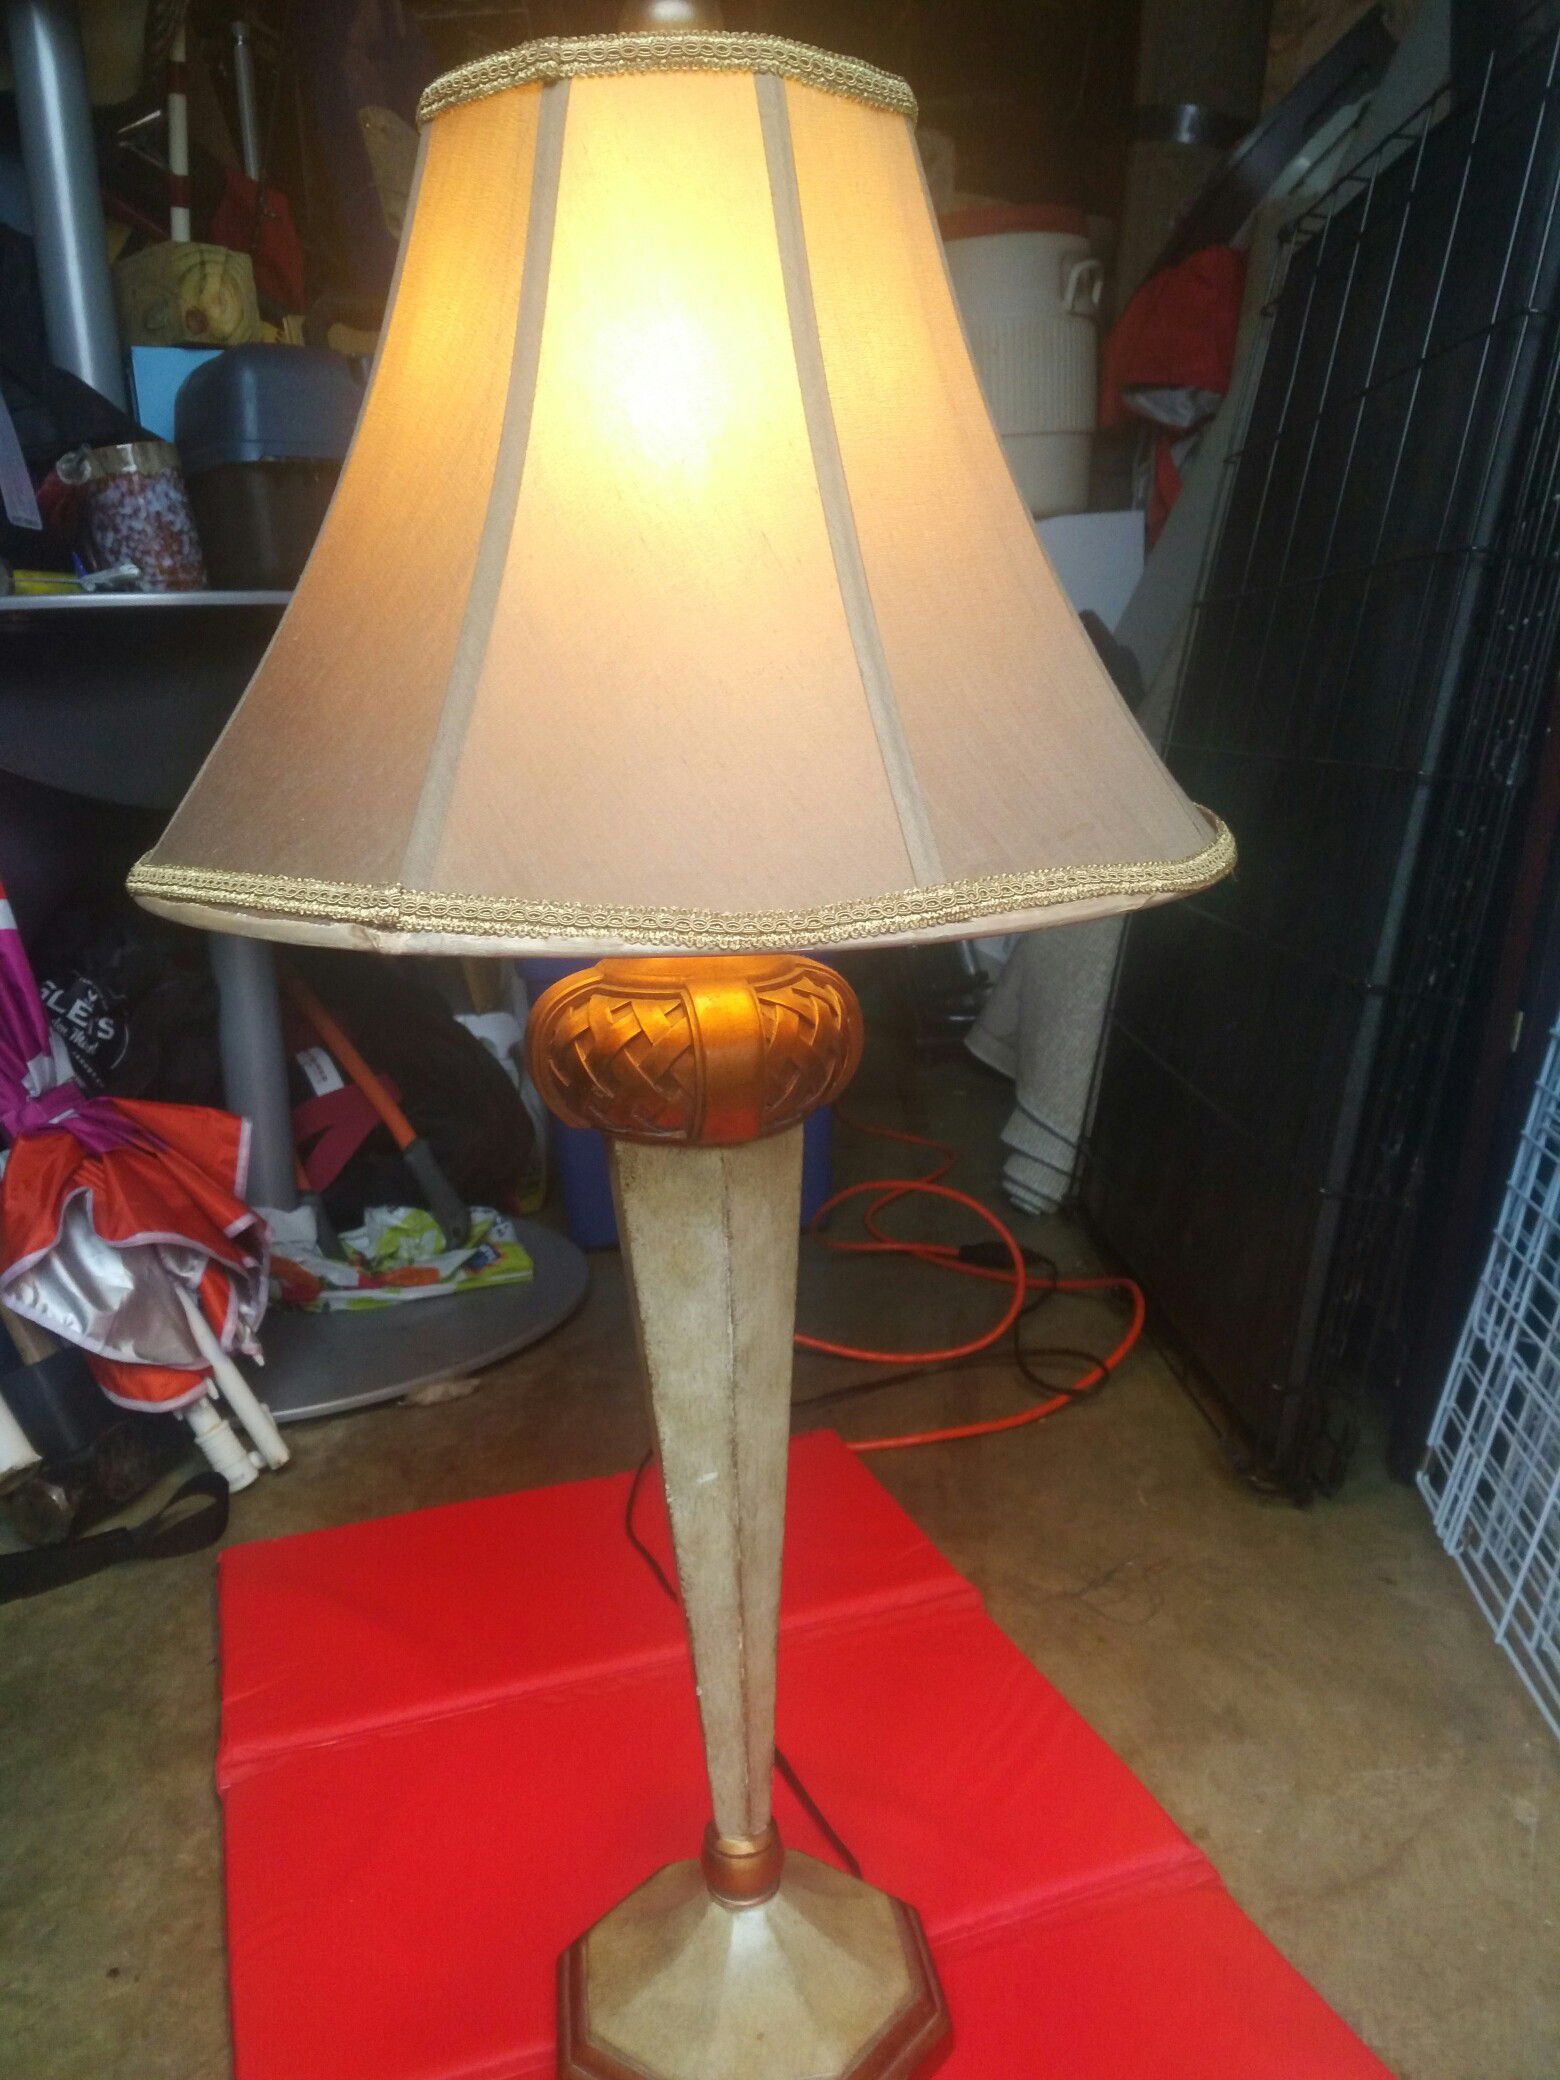 One Antique lamp